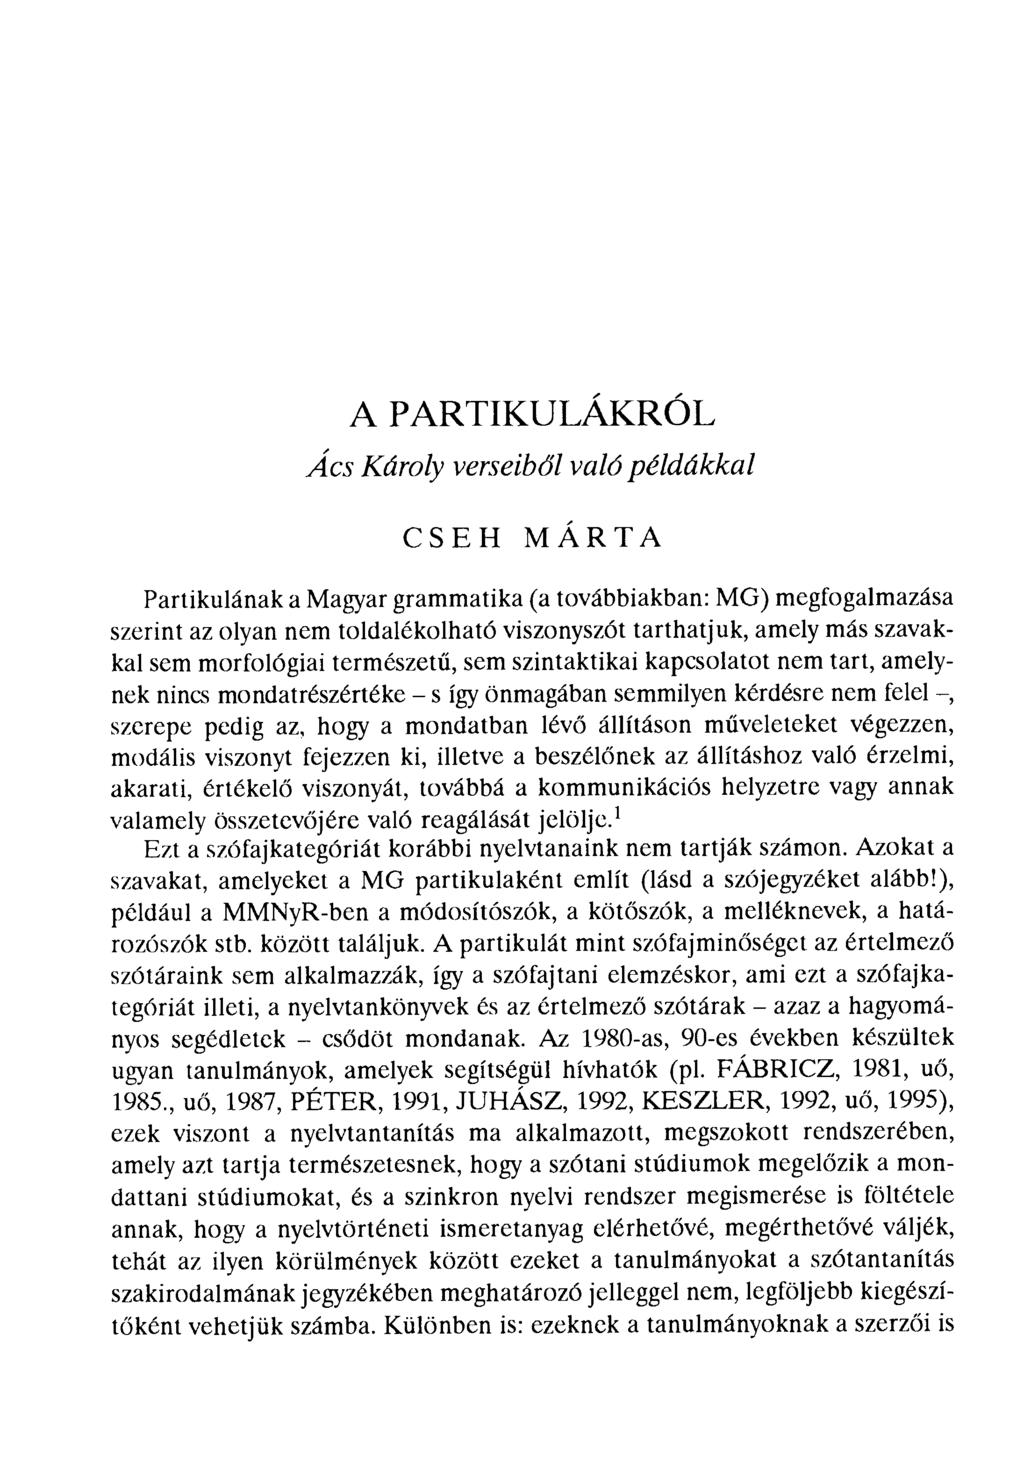 A PARTIKULÁKRÓL Ács Károly verseib ől való példákkal CSEH MARTA Partikulának a Magyar grammatika (a továbbiakban: MG) megfogalmazása szerint az olyan nem toldalékolható viszonyszót tarthatjuk, amely